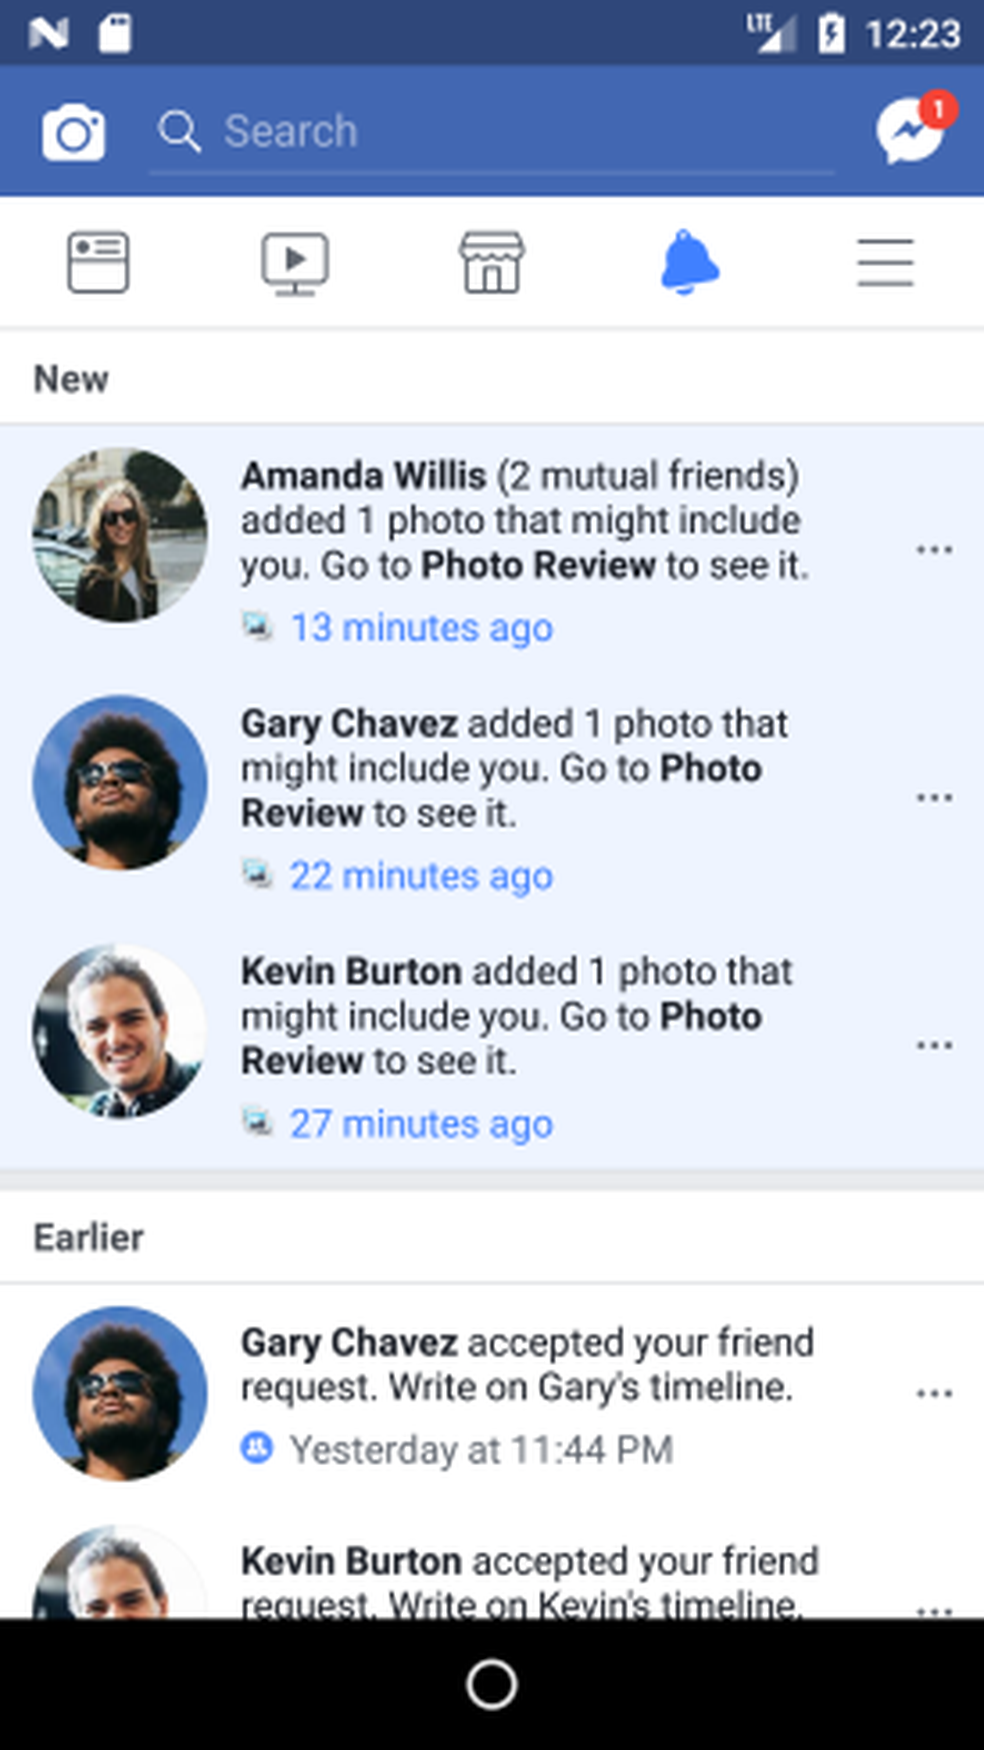 Facebook irá notificar quando alguém postar uma foto em que o usuário possa estar, mesmo se ele não tiver sido marcado (Foto: Divulgação)